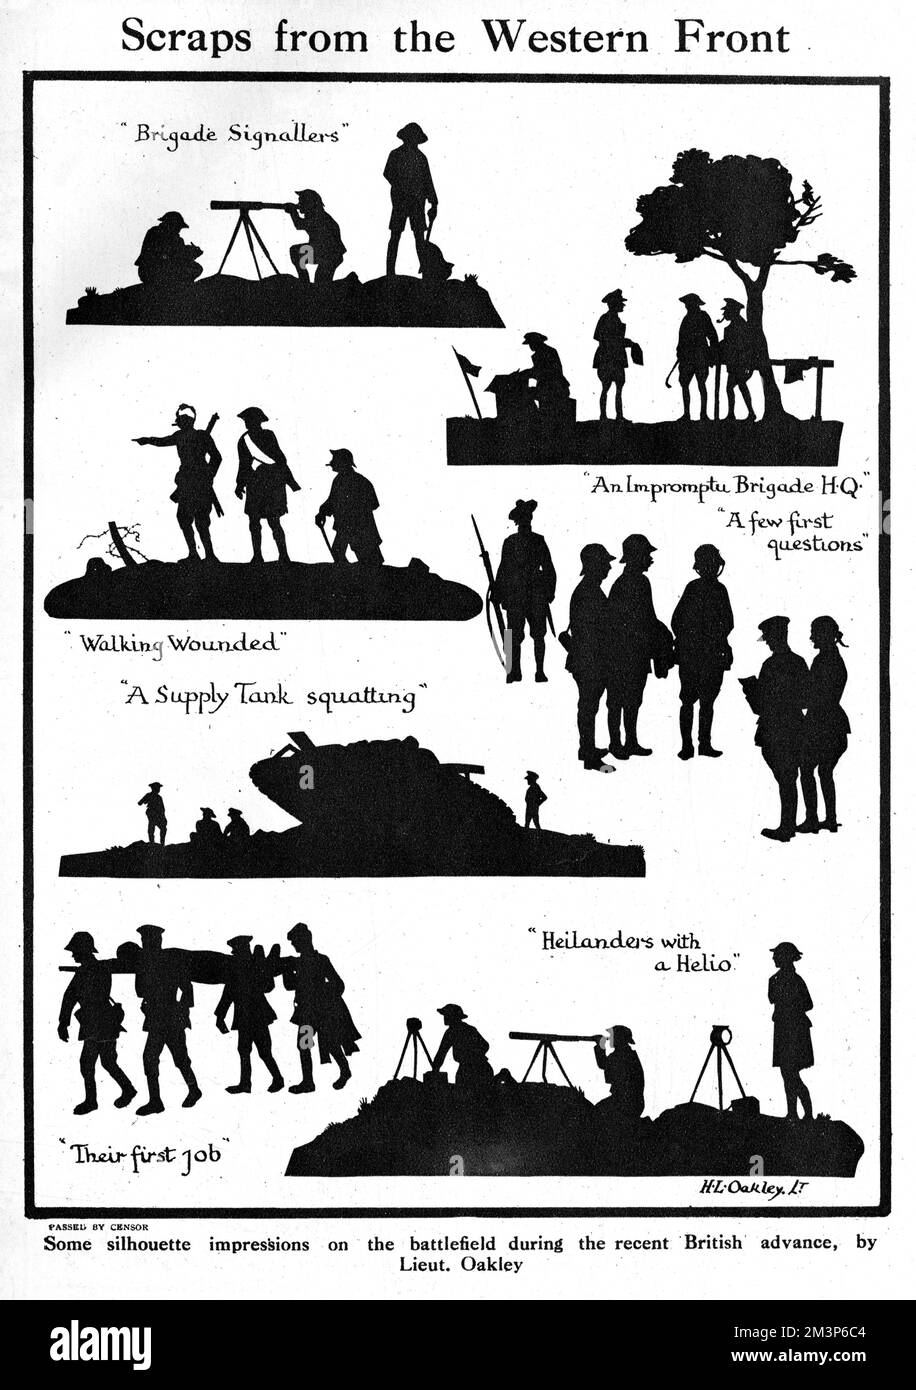 Quelques silhouettes sur le champ de bataille lors d'une avancée britannique dans le nord de la France en 1918, taillées par le célèbre artiste de silhouette, le capitaine H. L. Oakley. Date: 1918 Banque D'Images